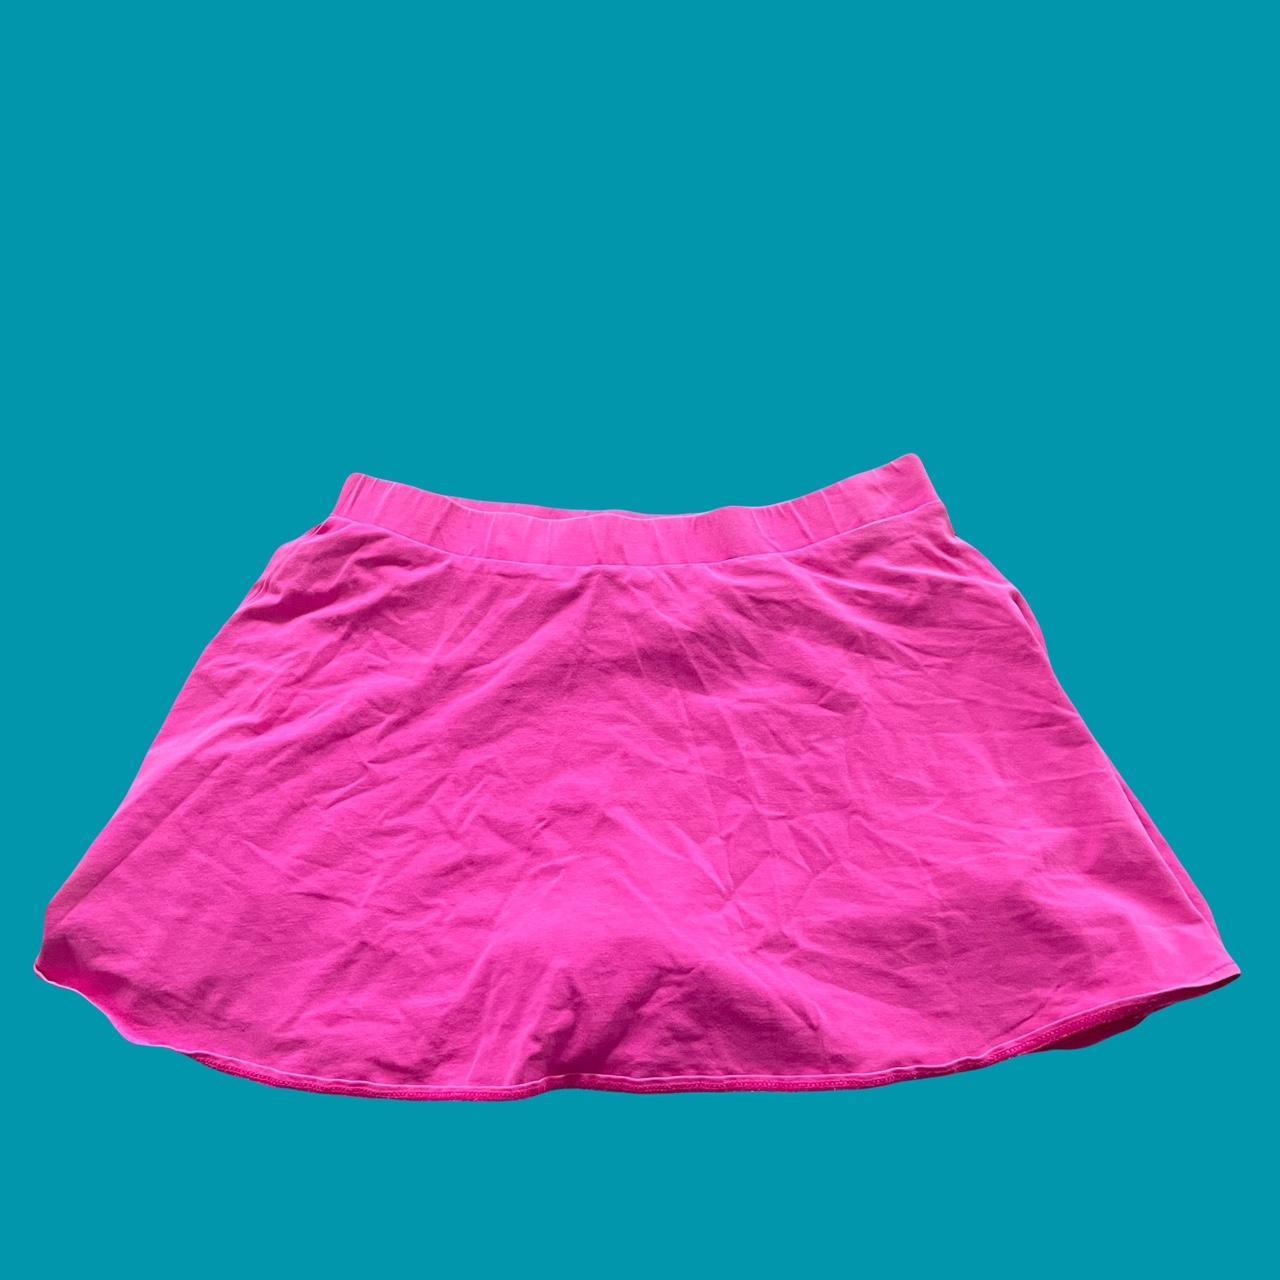 hot pink tennis skirt - Depop